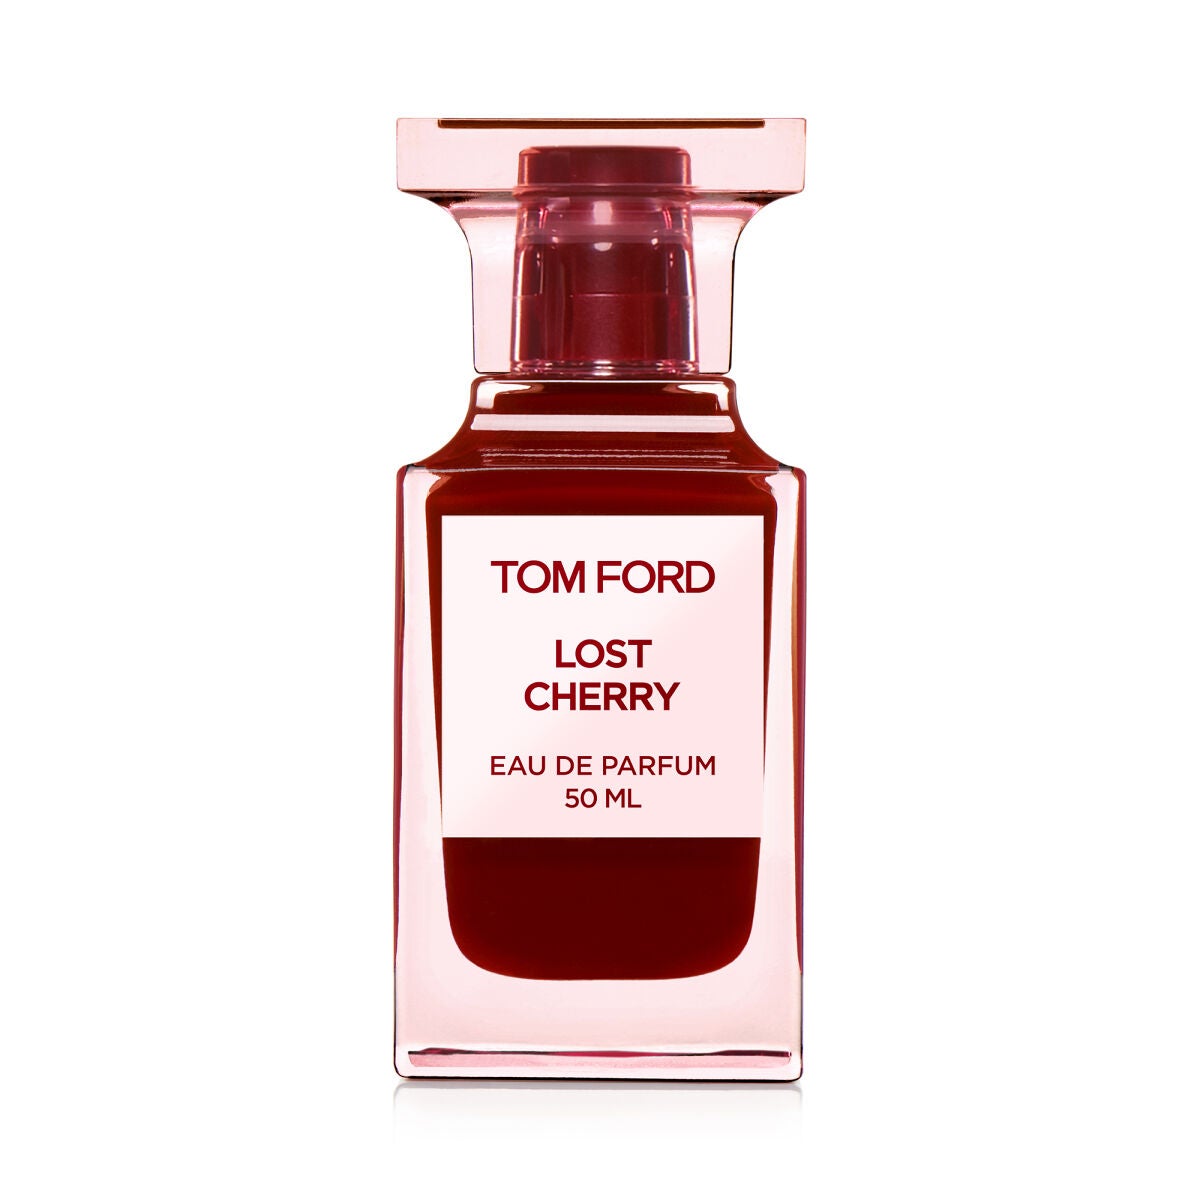 TOM FORD BEAUTY(トムフォードビューティ)の香水29選 | 人気